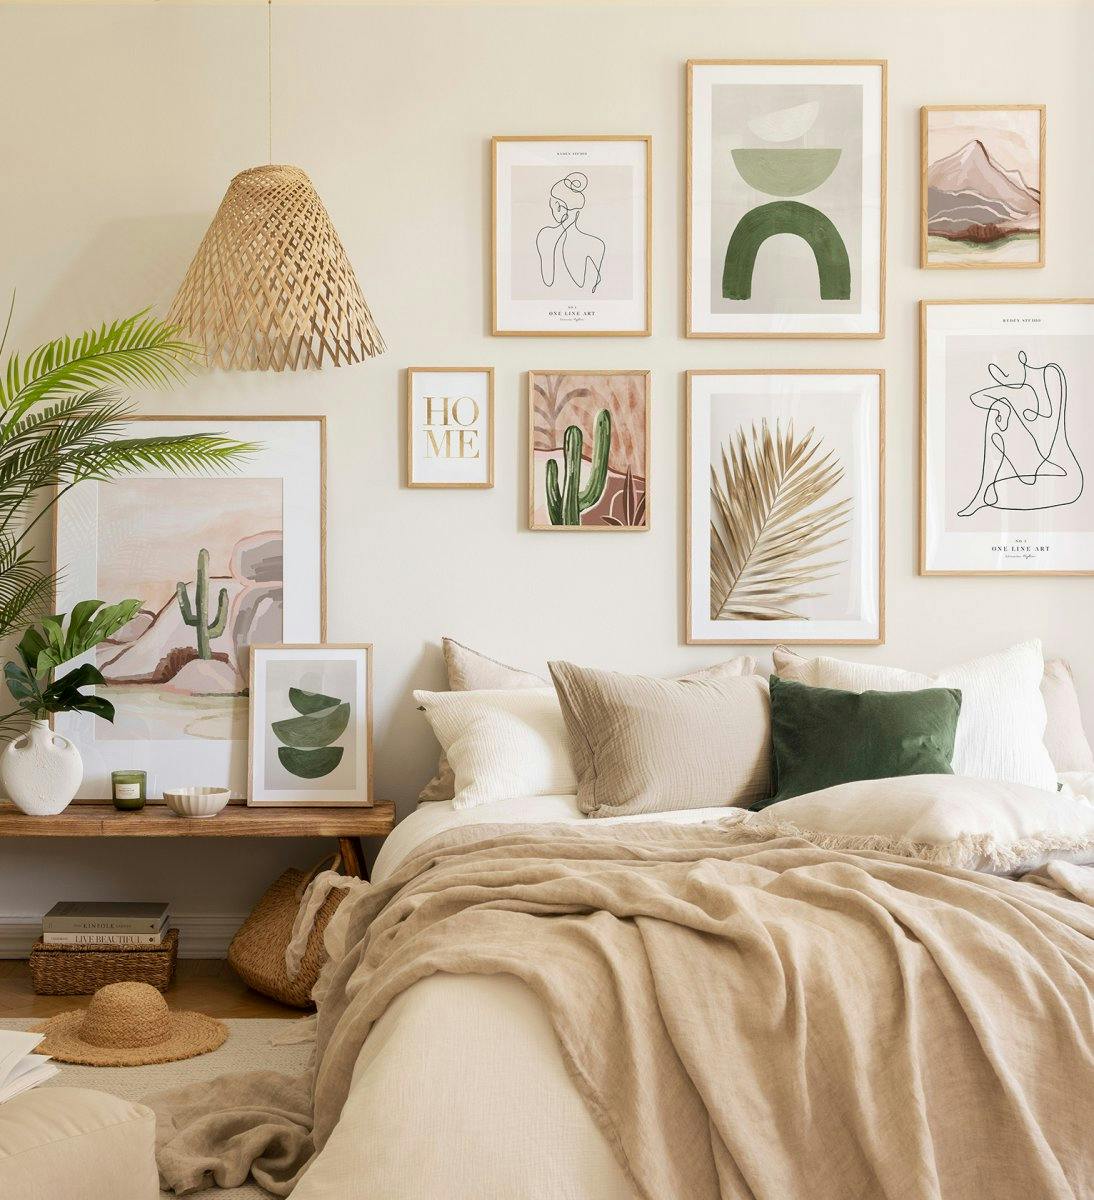 Eichen gerahmte Bilderwand mit ruhigen, sommerlichen Farben für das Schlafzimmer.